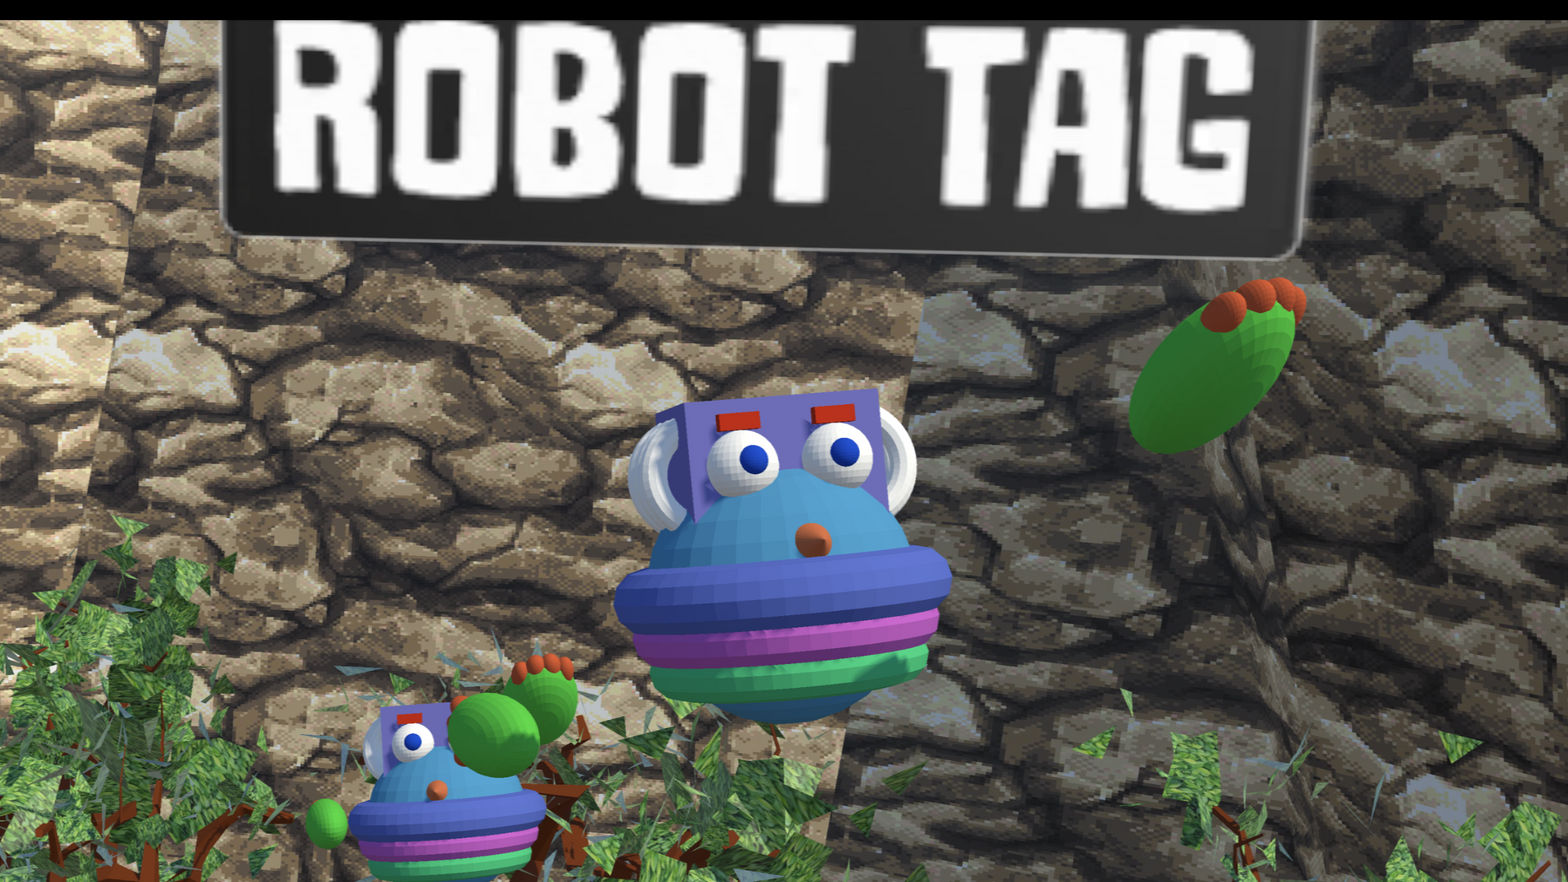 Robot Tag